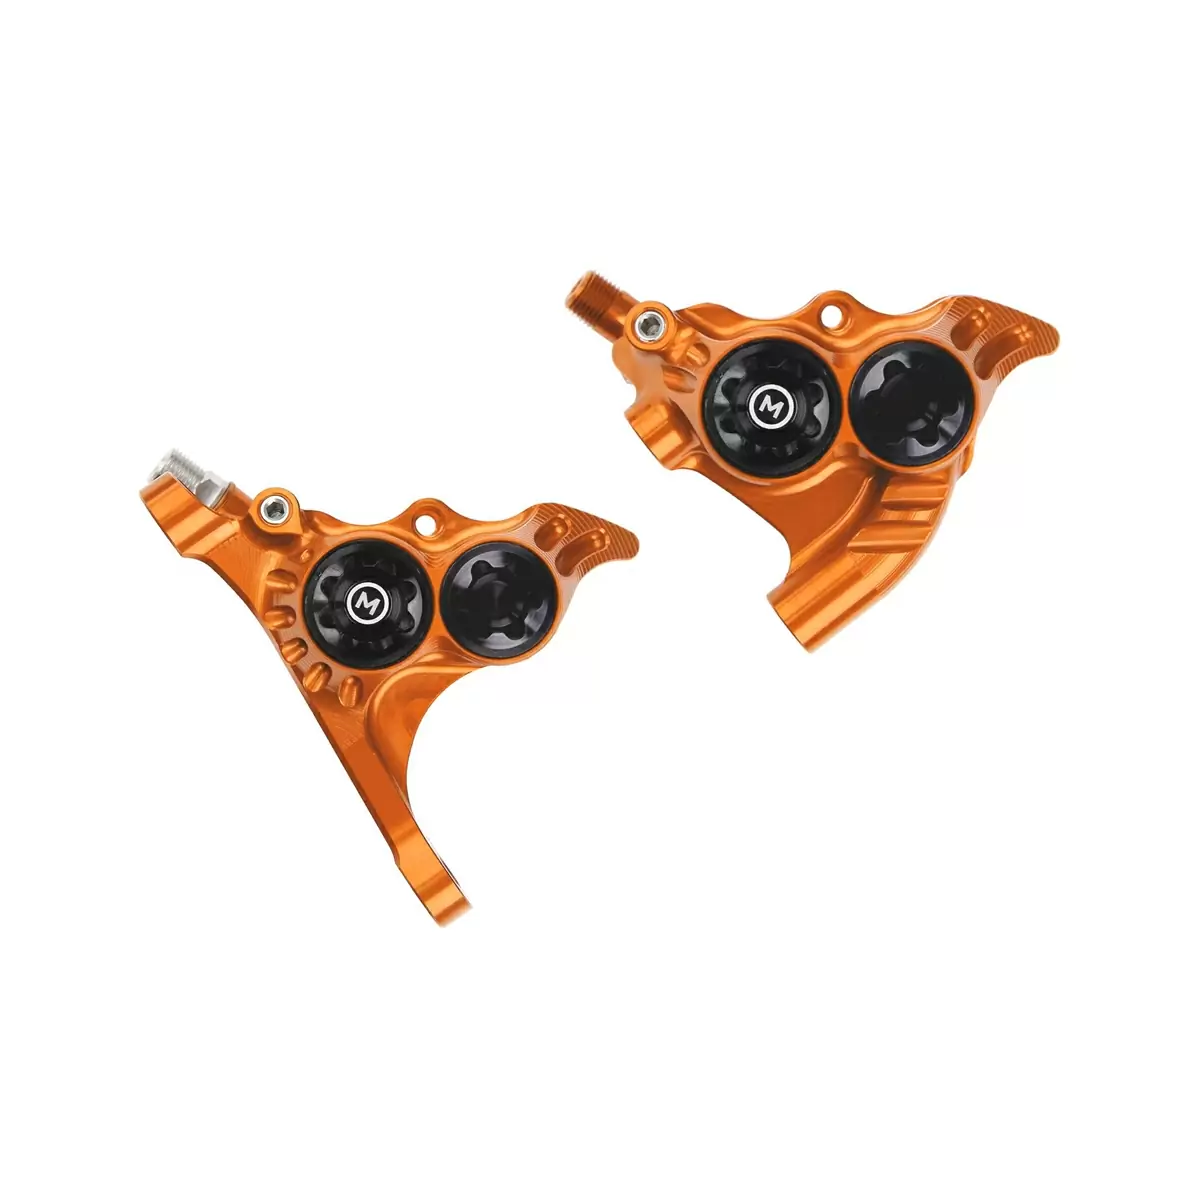 Dianteiro+traseiro RX4+ montagem plana +20mm pinças de freio óleo mineral laranja - image